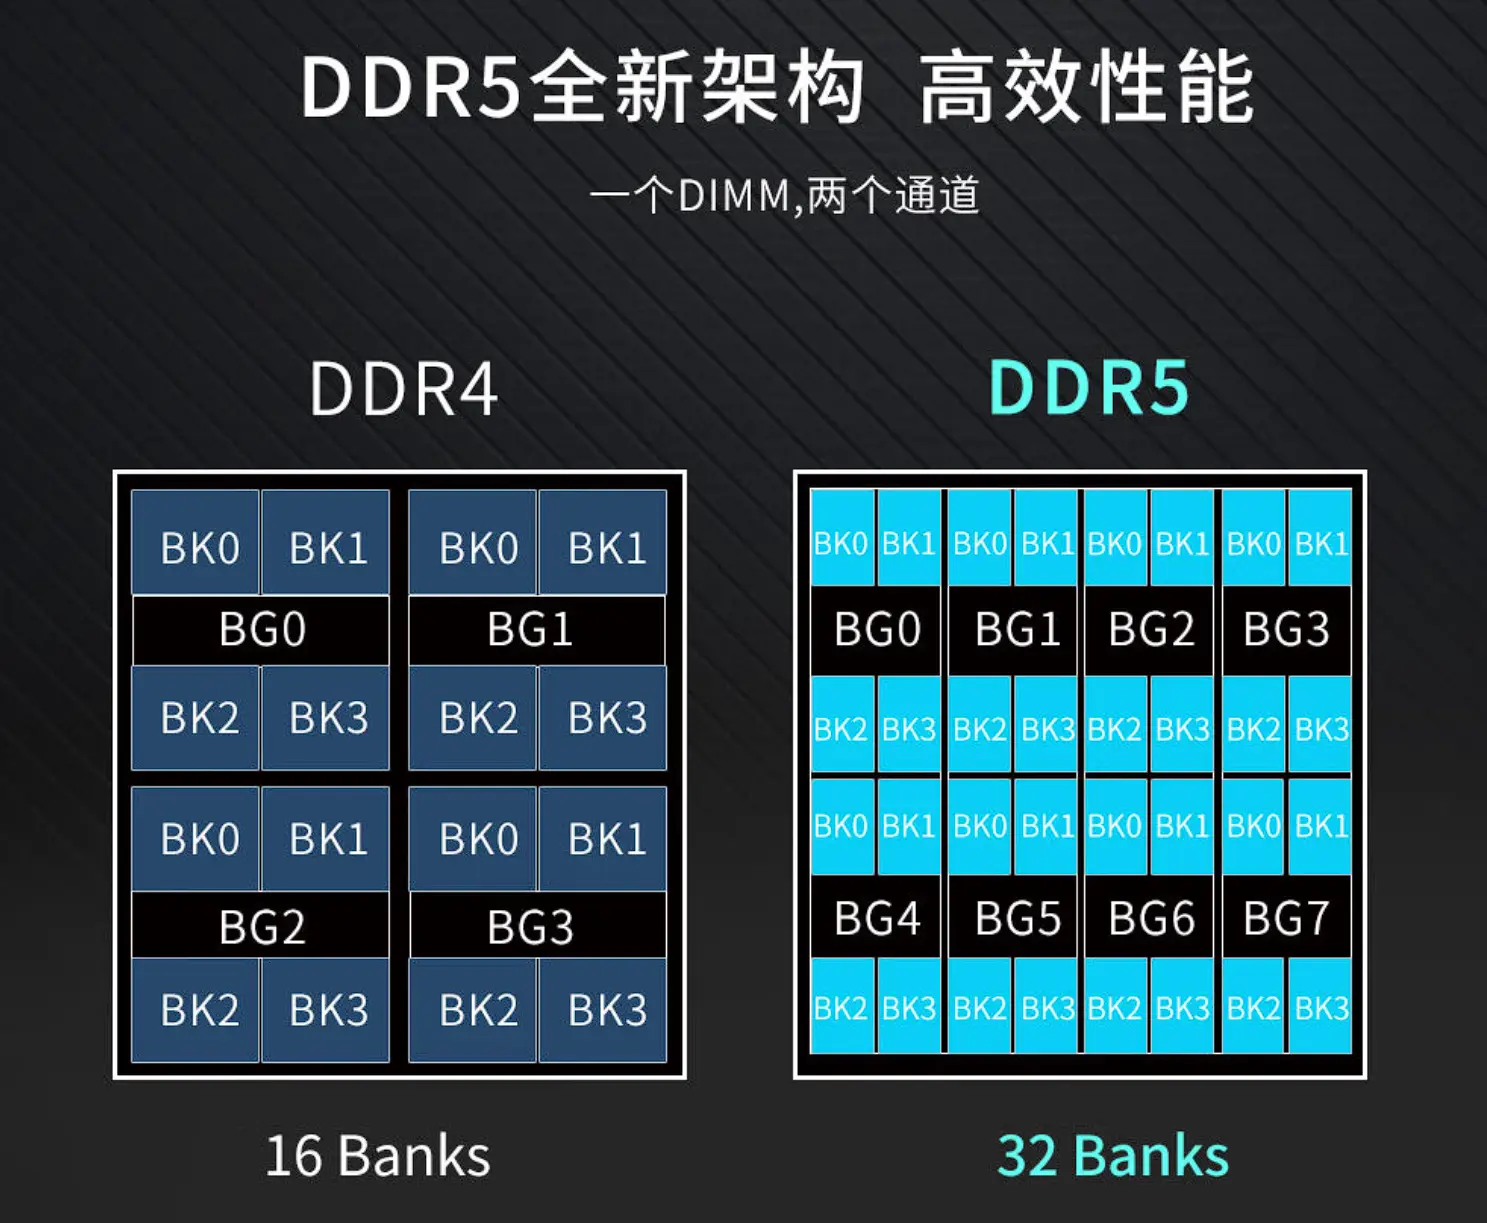 探索DDR5内存技术：性能领先、应用广泛，前景看好  第7张